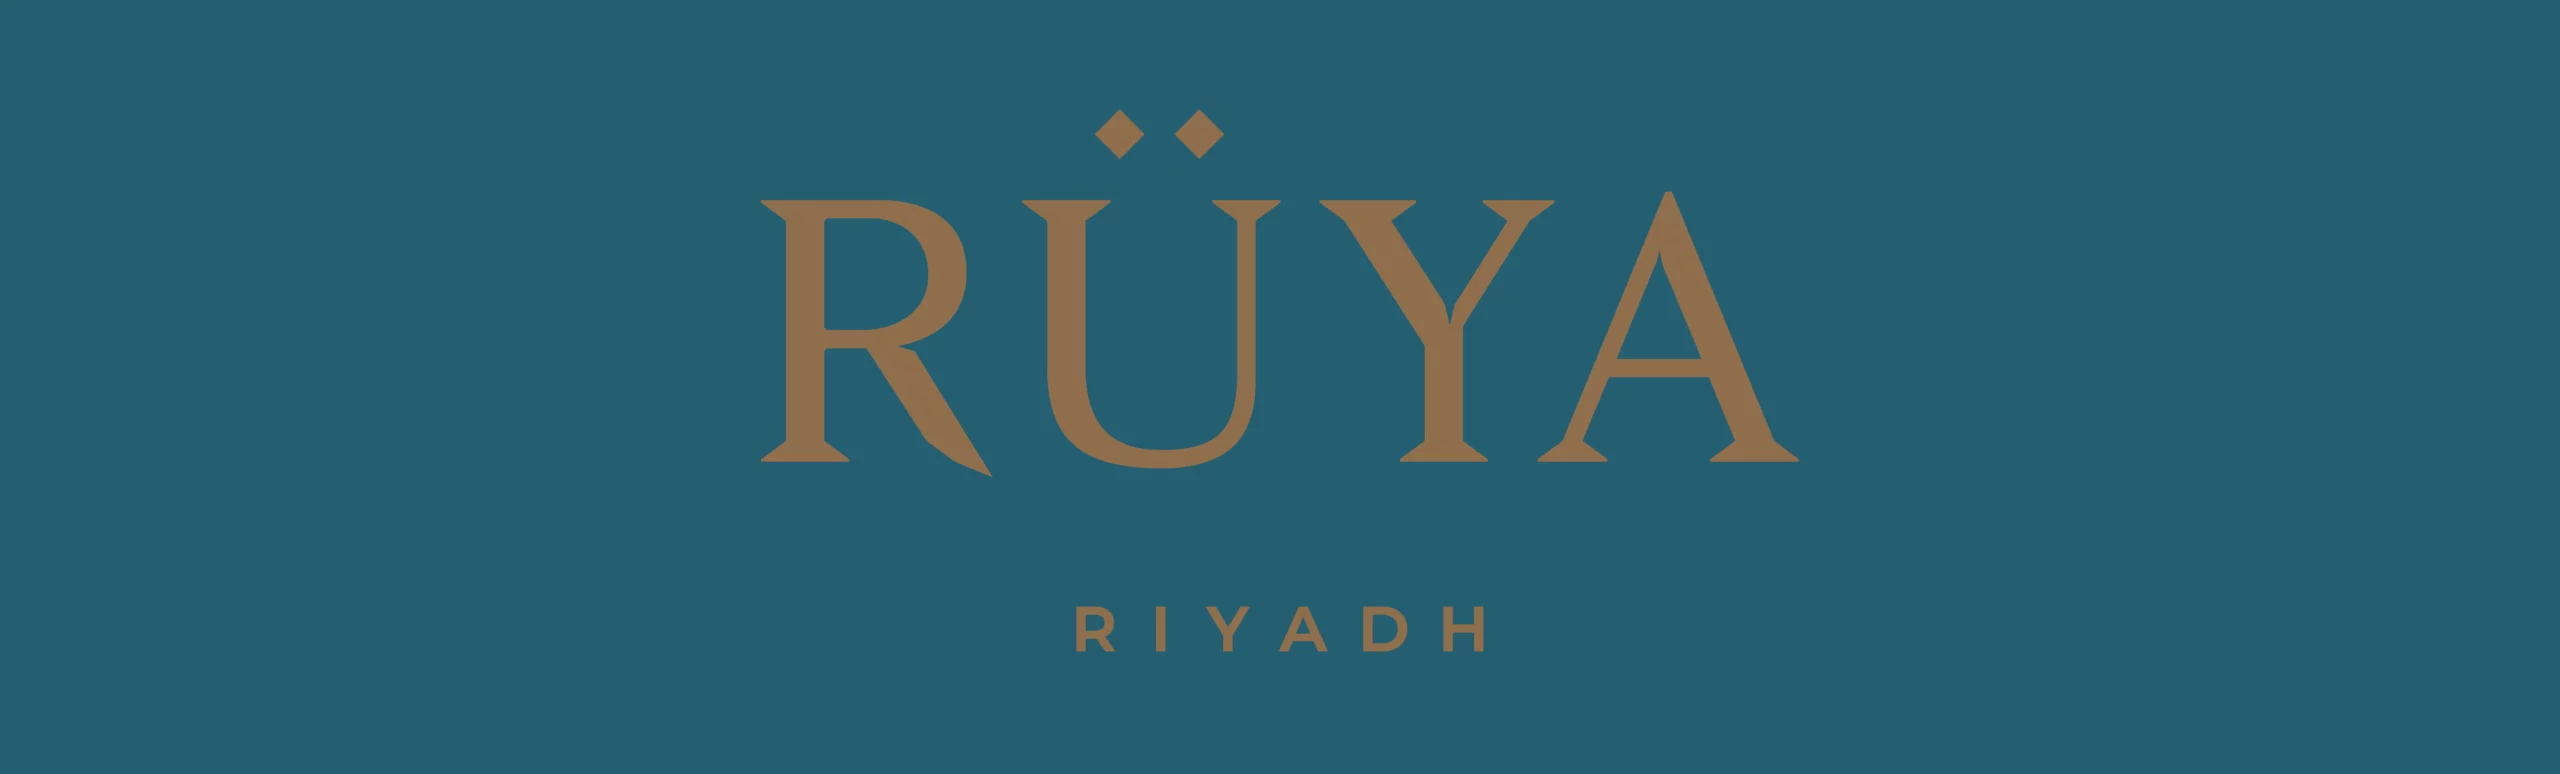 23_Ruya_Restaurant_Riyadh_By_Storm_Design_Studio-1